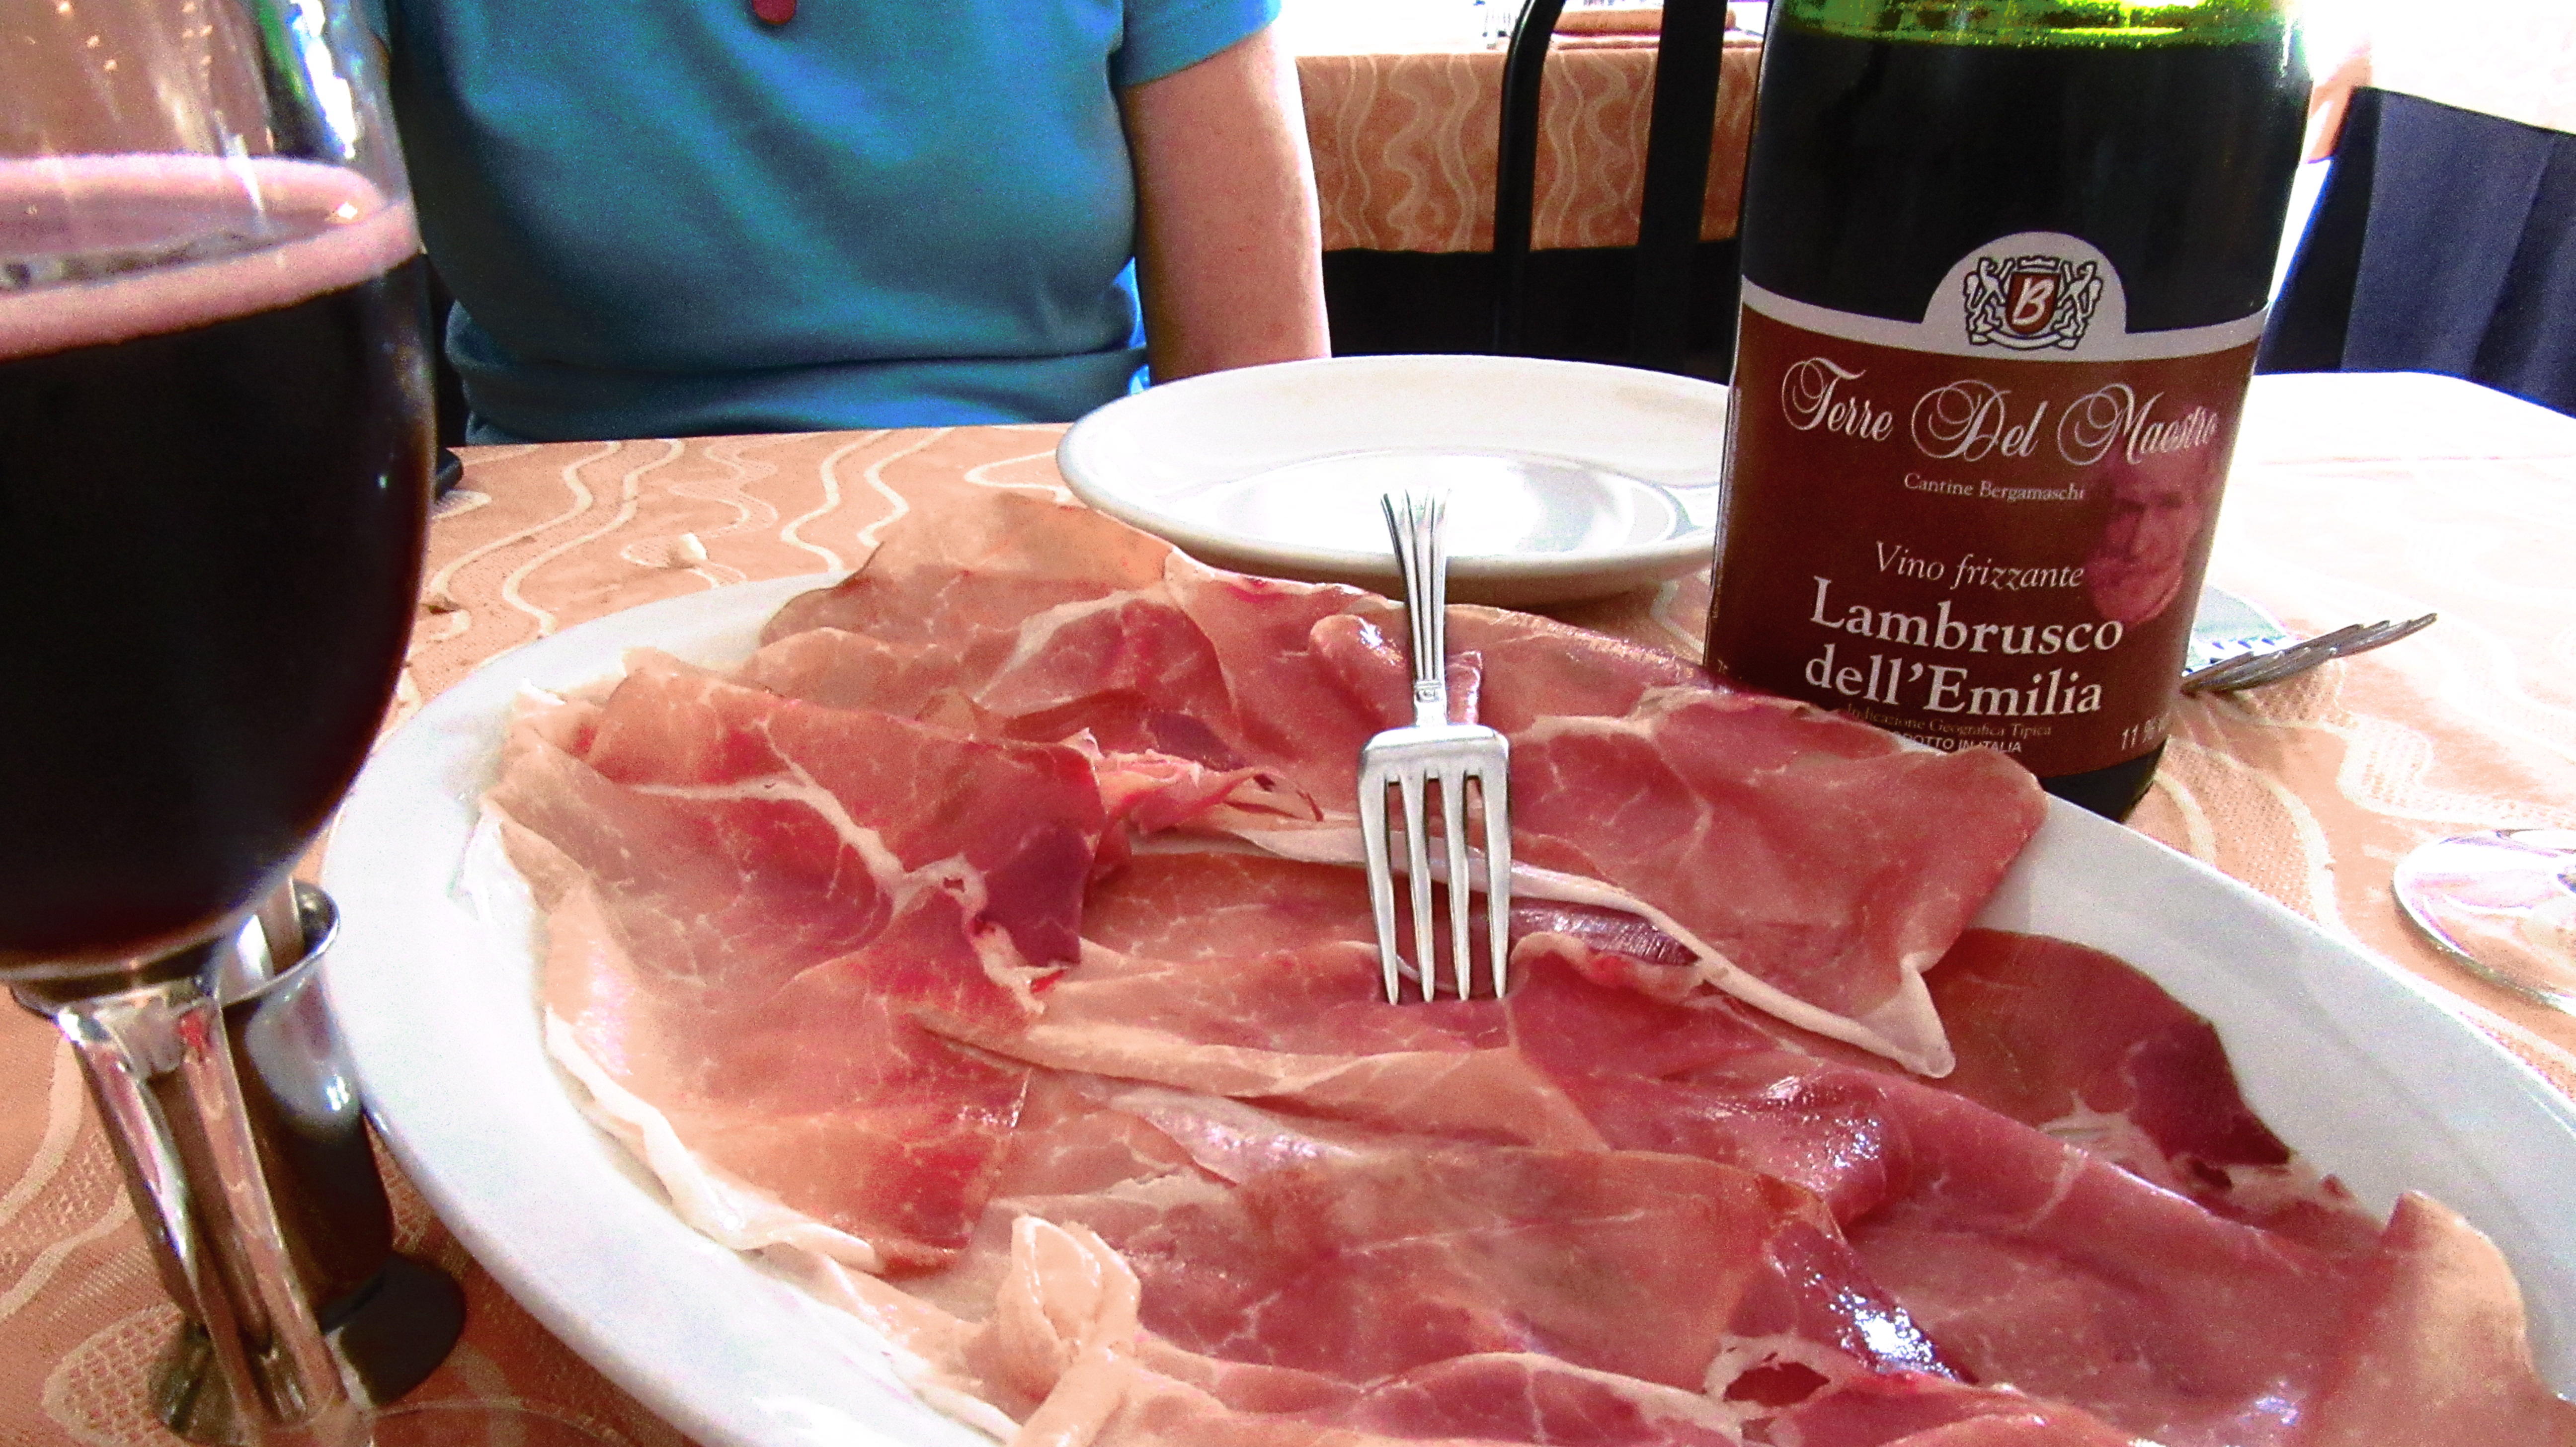 Culatello, a premium cut of Prosciutto di Parma